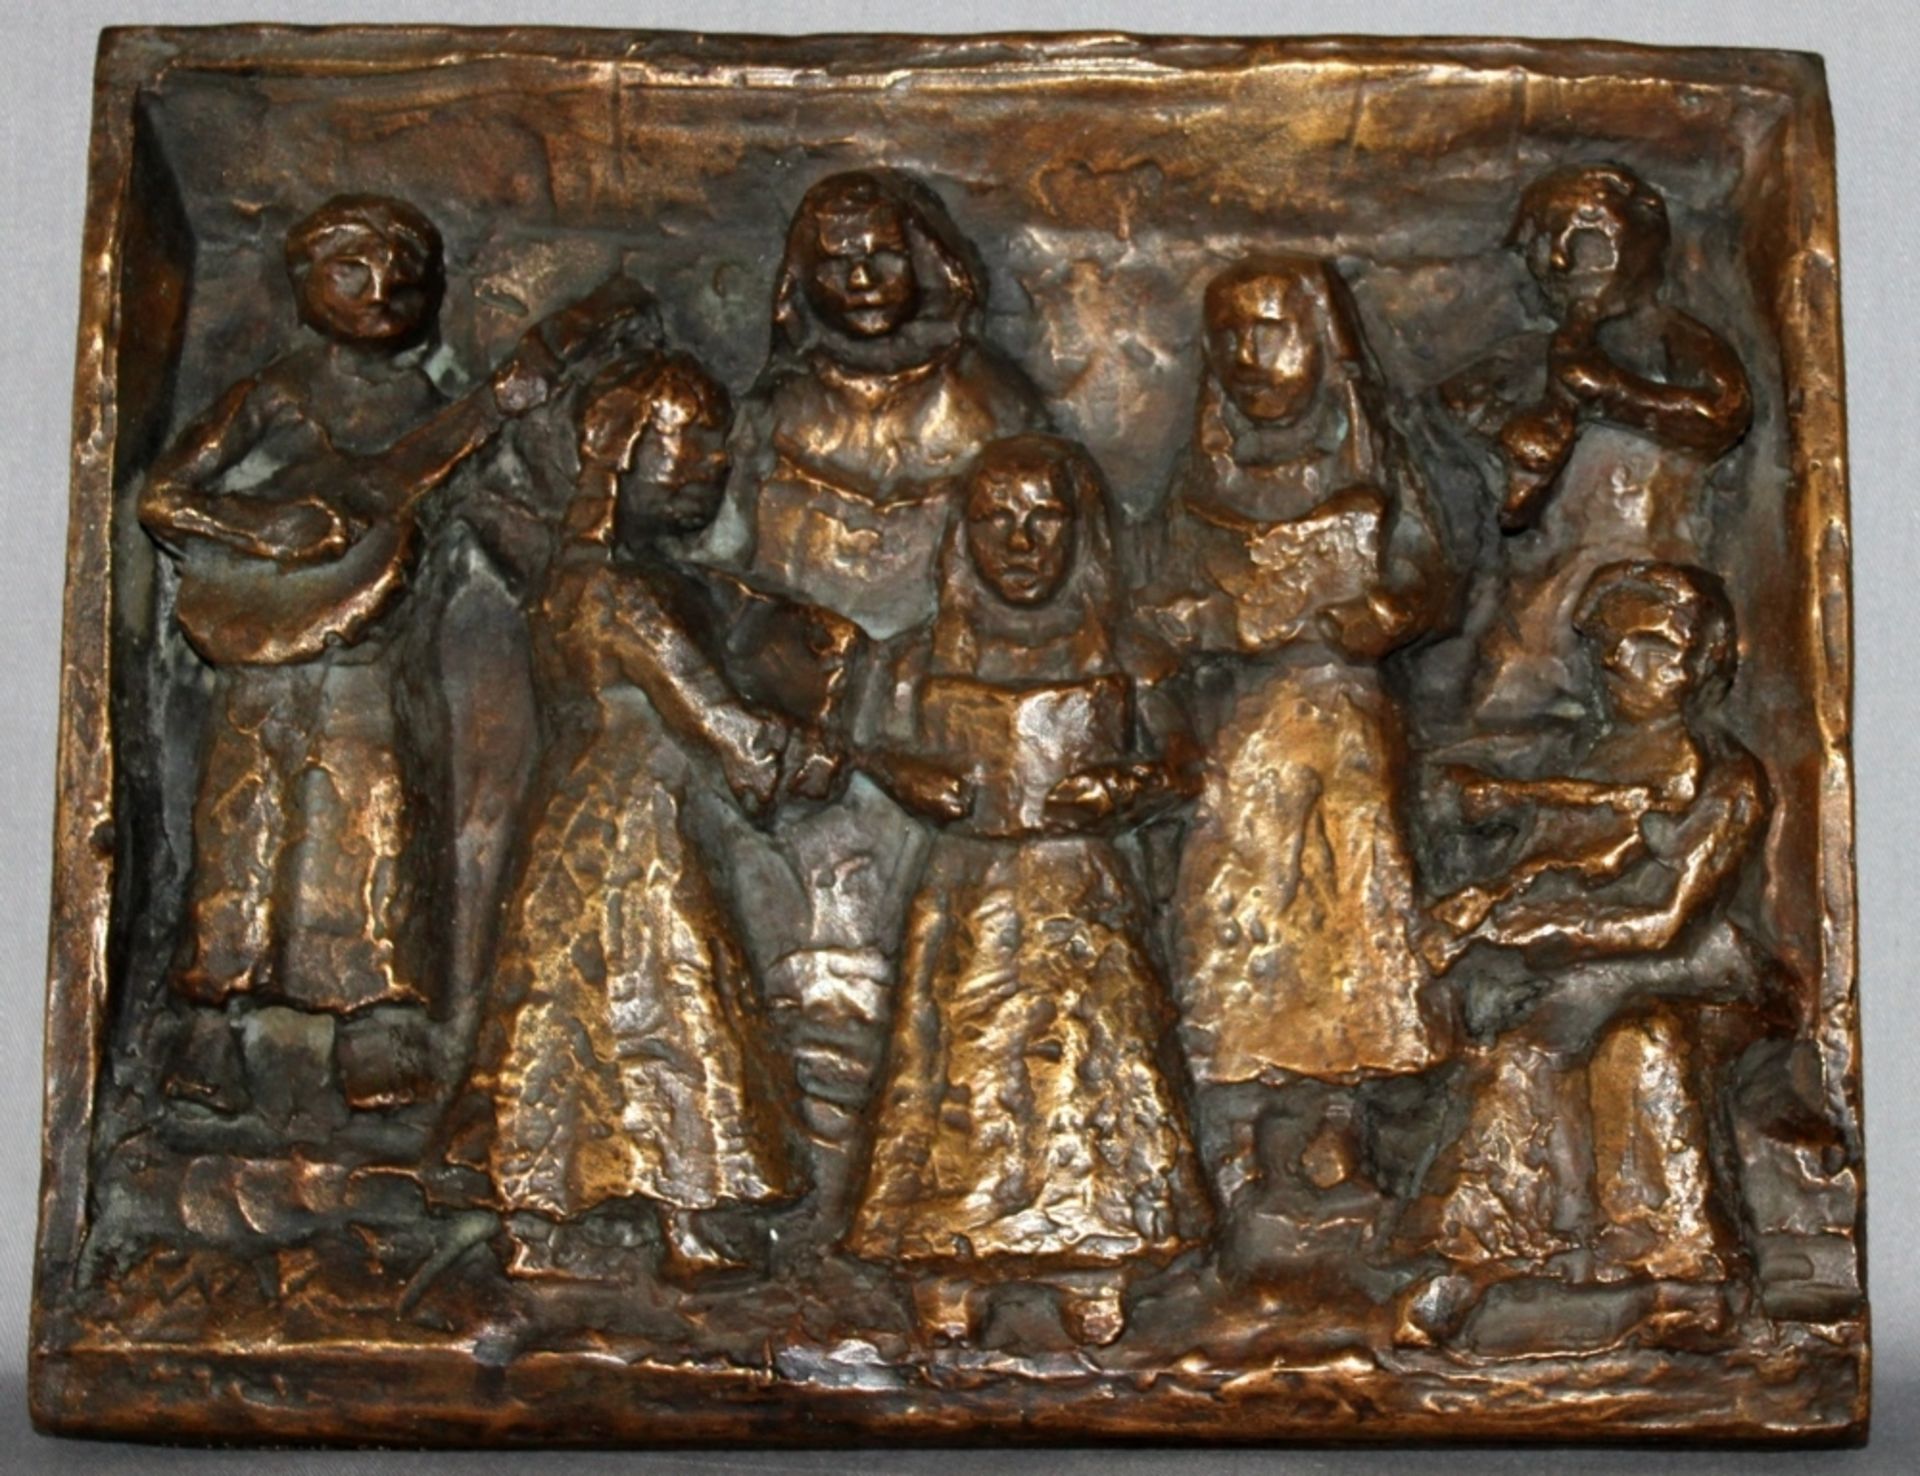 Metall. Bronzerelief. Volland, Walter. (Musizierende Frauen). Bronzerelief am äußeren Rand